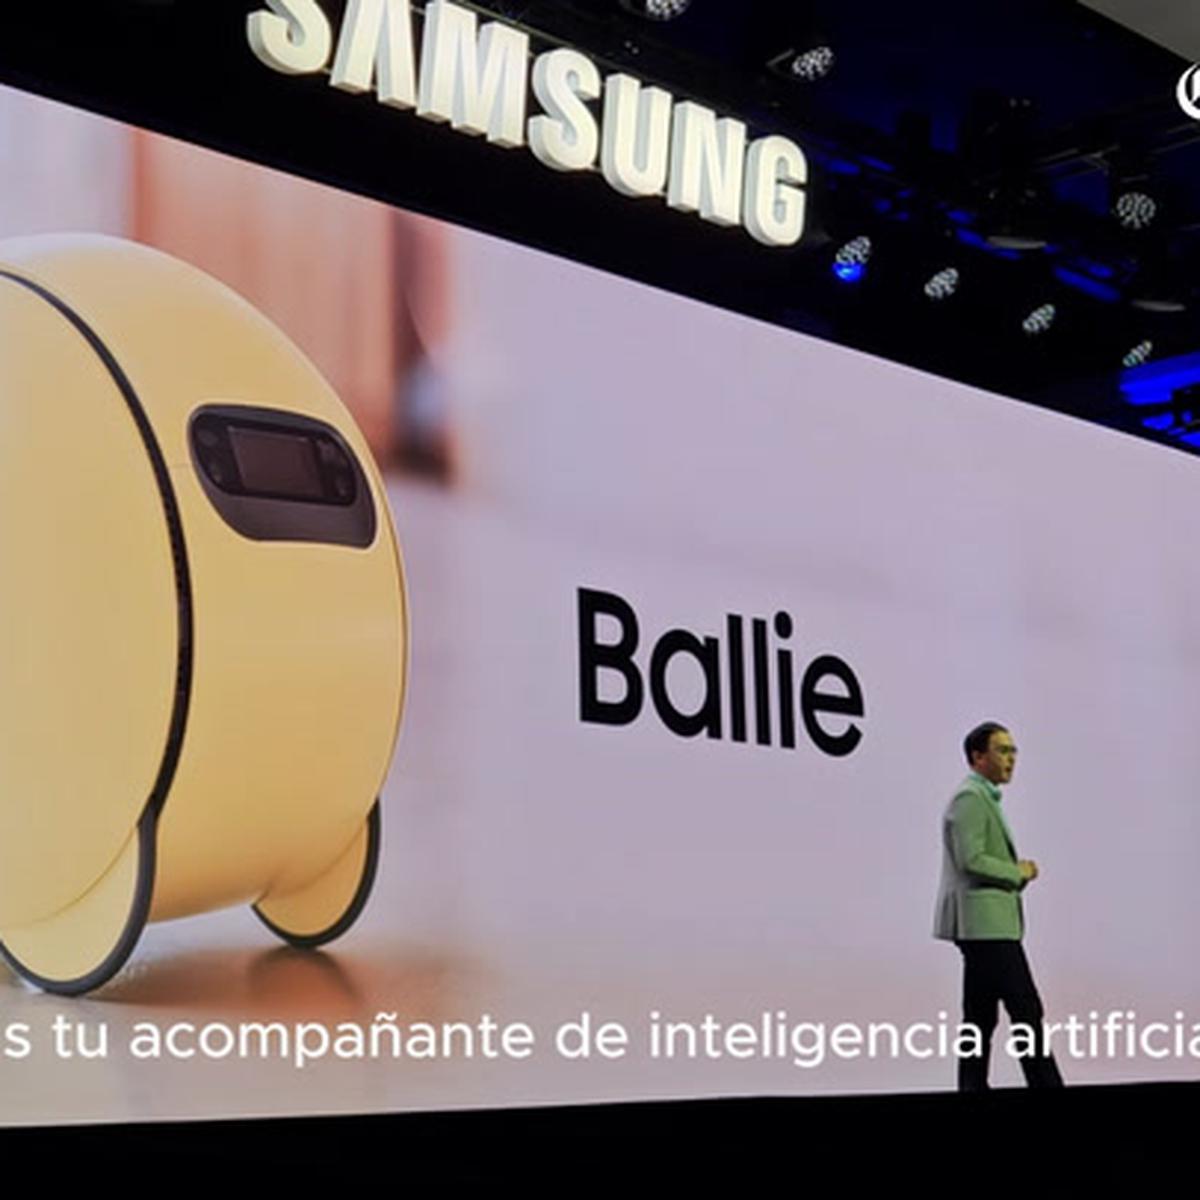 La nueva nevera inteligente de Samsung tiene una pantalla táctil gigante